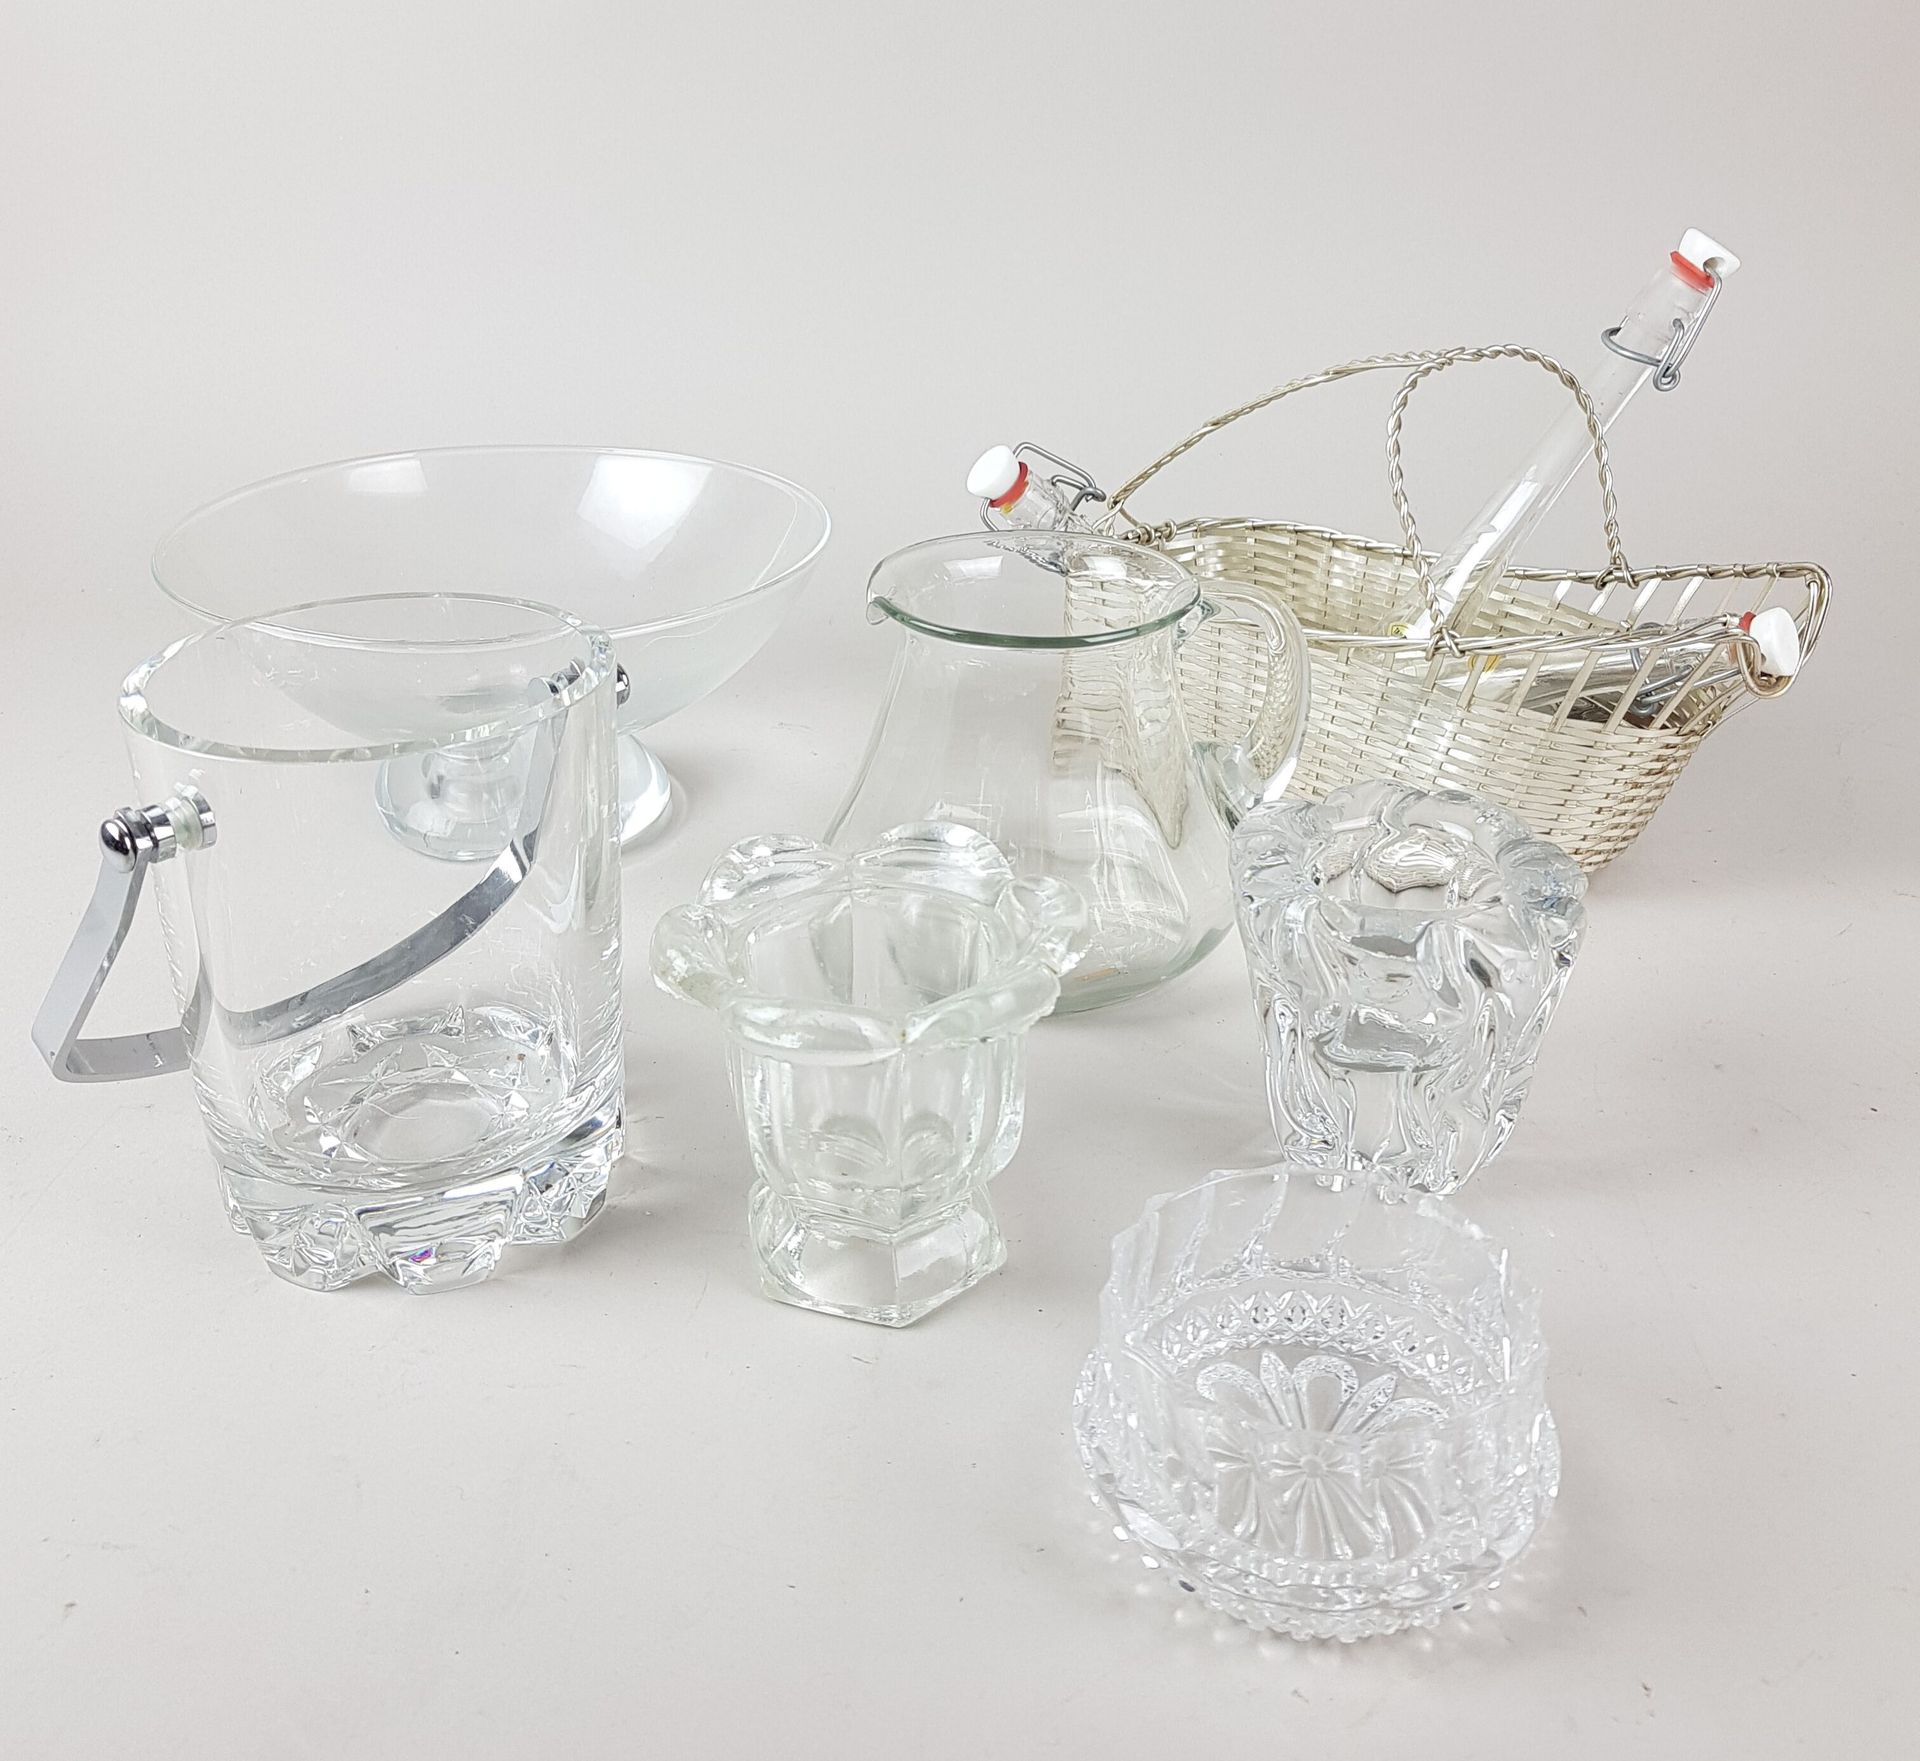 Null LOT von Glaswaren, darunter Eiskübel, Becher, Krug, Metallkorb - Gebrauchss&hellip;